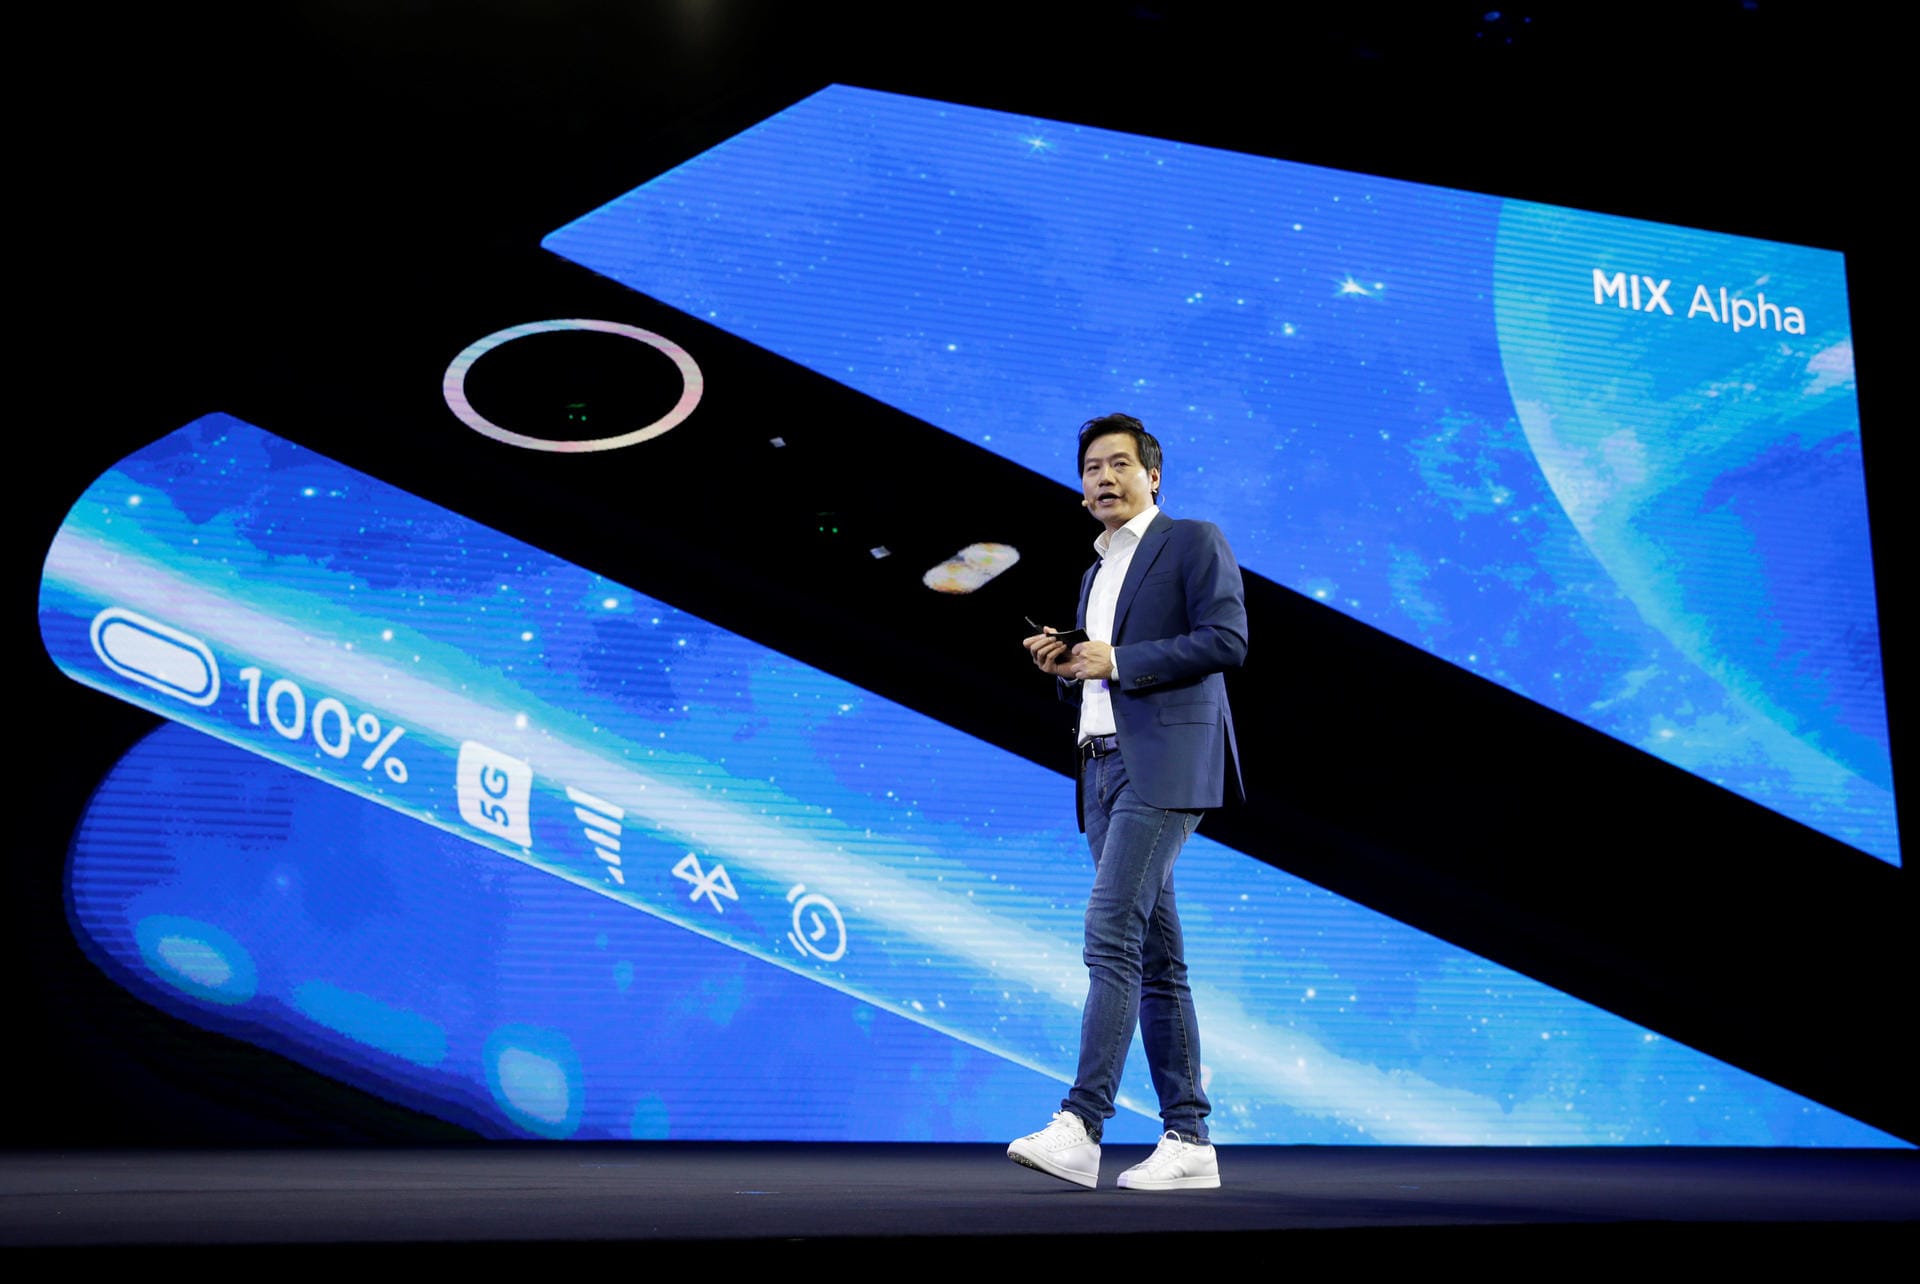 Der chinesische Smartphone-Konzern Xiaomi hat auf seiner Präsentation in Peking ein neues Premium-Smartphone gezeigt: Das Mi Mix Alpha. Das Foto zeigt Xiaomi-CEO Lei Jun bei der Vorstellung